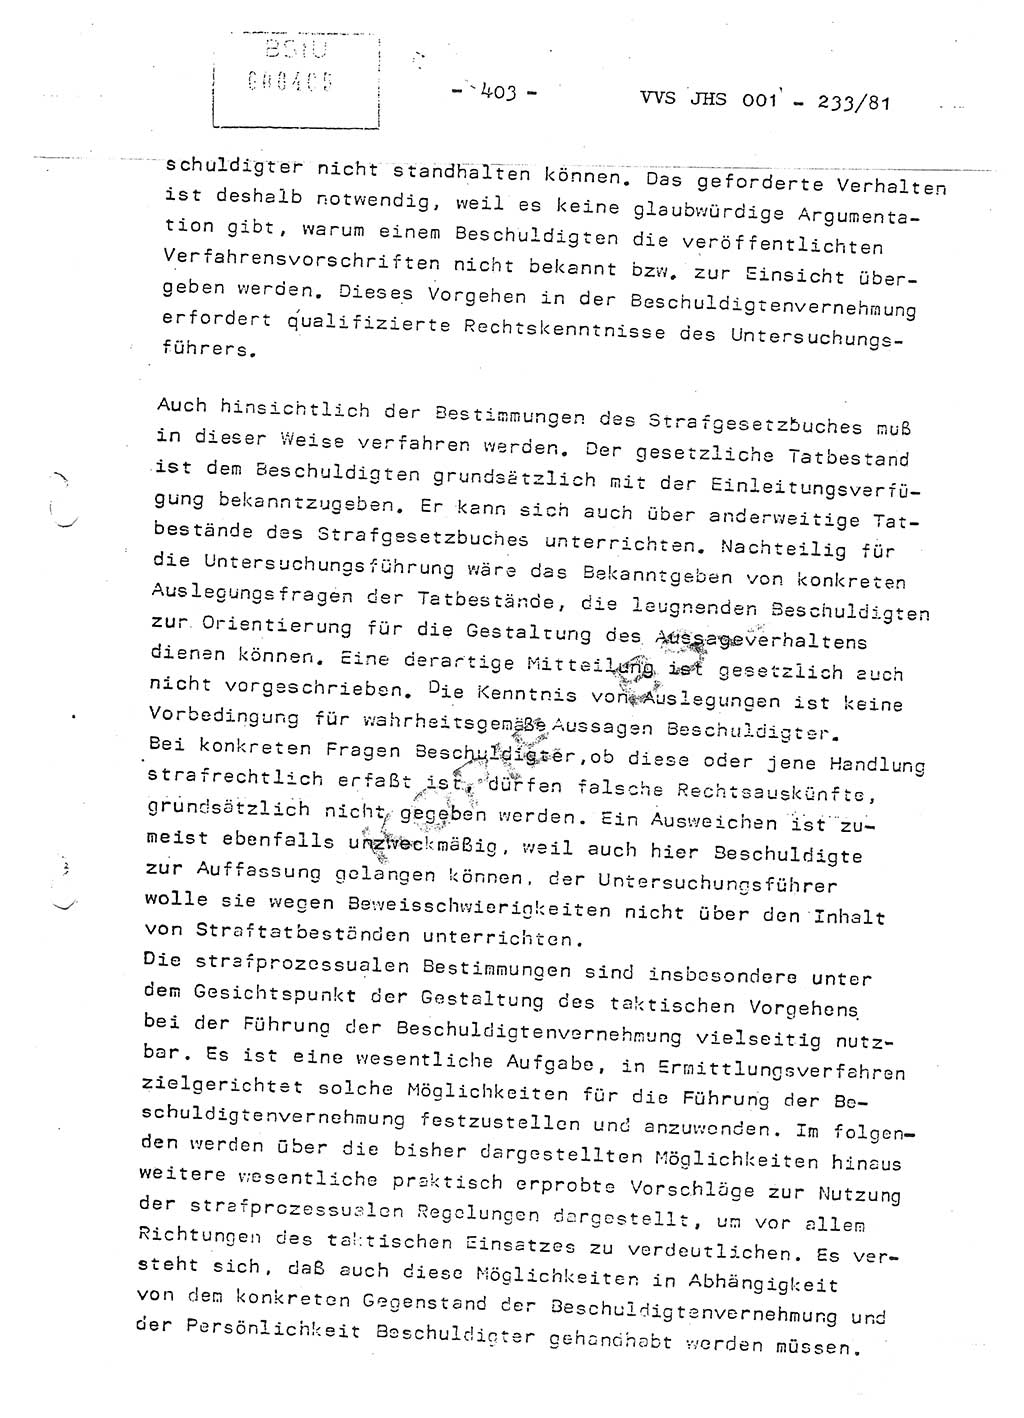 Dissertation Oberstleutnant Horst Zank (JHS), Oberstleutnant Dr. Karl-Heinz Knoblauch (JHS), Oberstleutnant Gustav-Adolf Kowalewski (HA Ⅸ), Oberstleutnant Wolfgang Plötner (HA Ⅸ), Ministerium für Staatssicherheit (MfS) [Deutsche Demokratische Republik (DDR)], Juristische Hochschule (JHS), Vertrauliche Verschlußsache (VVS) o001-233/81, Potsdam 1981, Blatt 403 (Diss. MfS DDR JHS VVS o001-233/81 1981, Bl. 403)